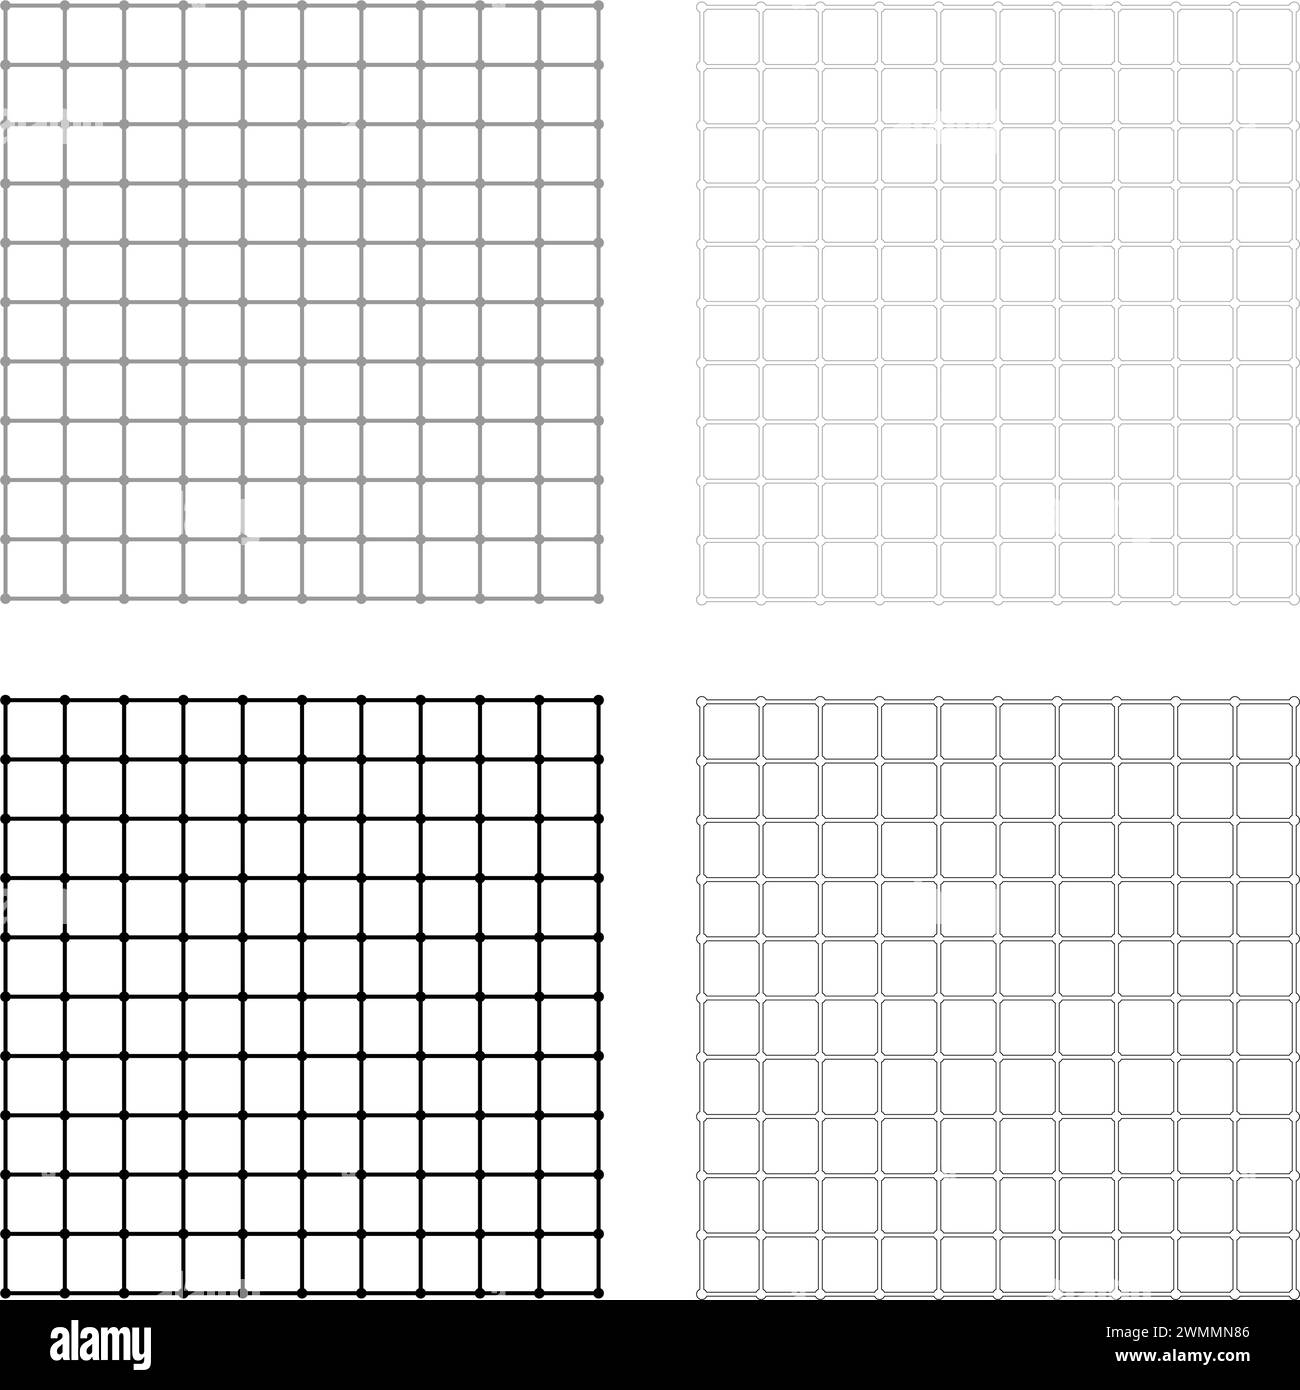 Icona del set a scacchi con griglia quadrata, grigio, colore nero, immagine grafica vettoriale semplice, riempimento continuo, linea di contorno sottile e piatta Illustrazione Vettoriale